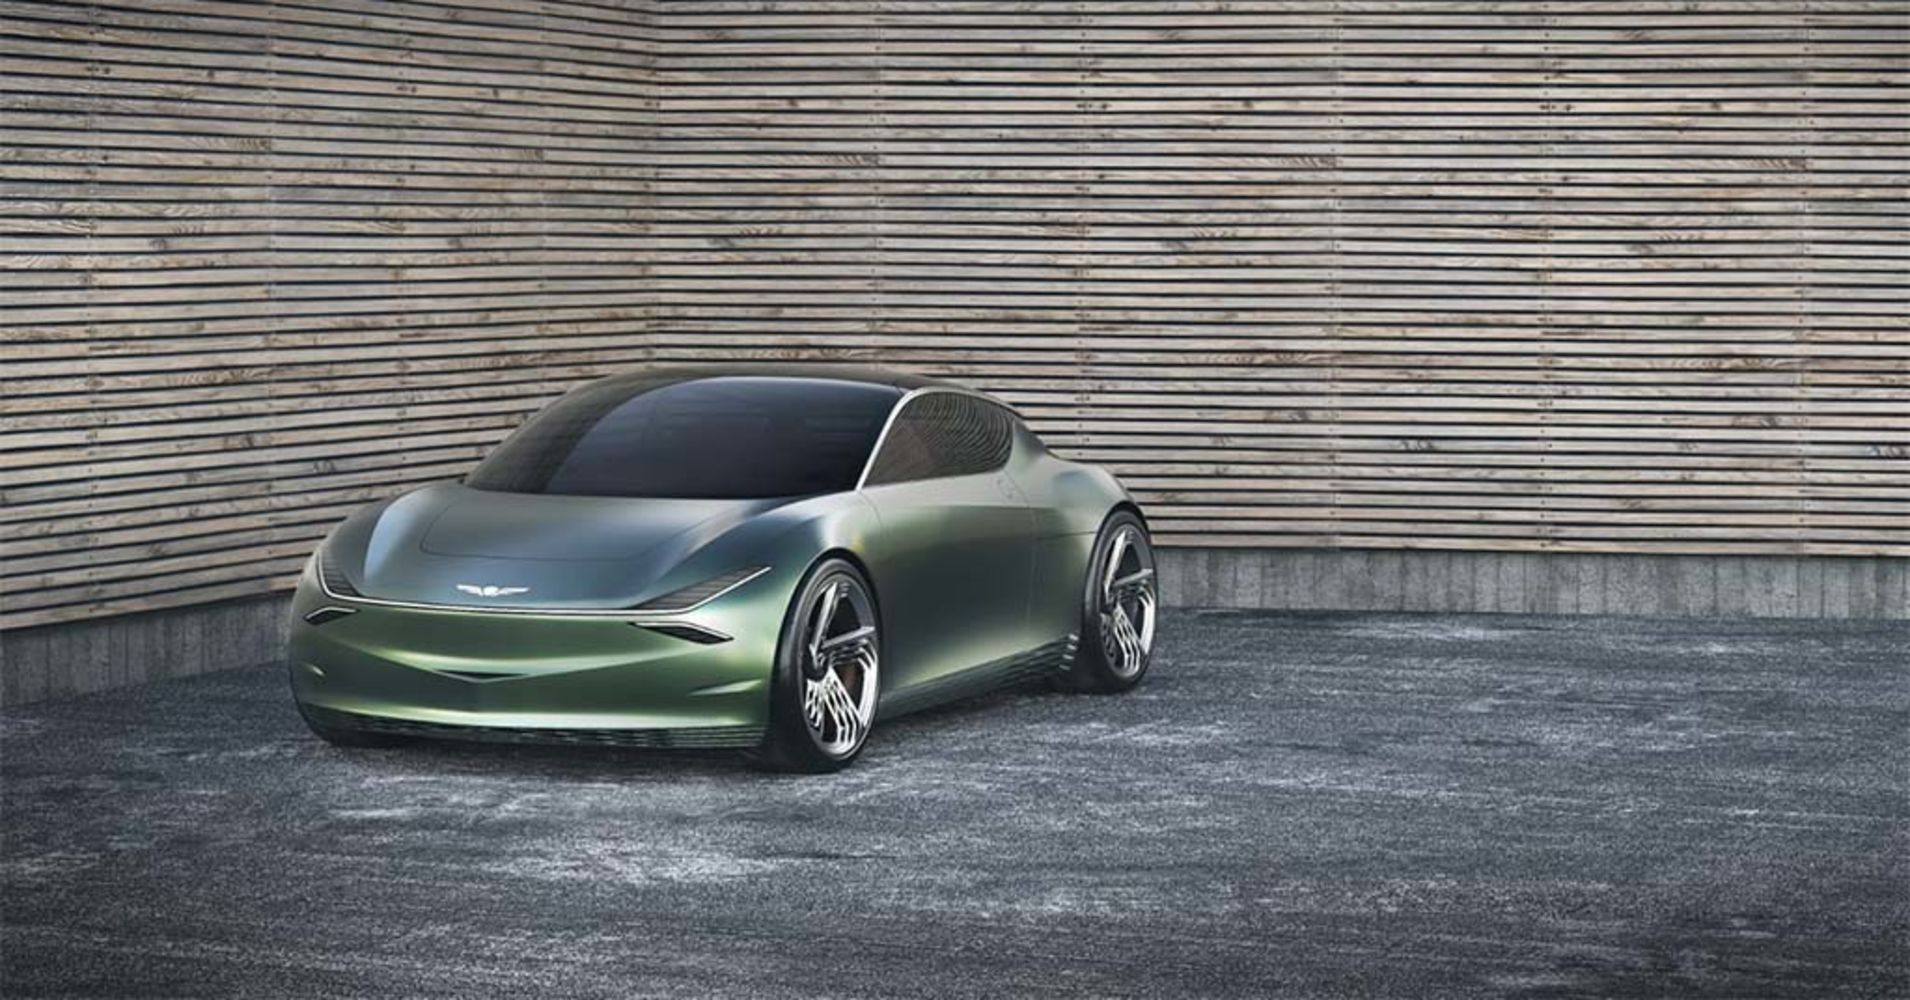 The Genesis Mint concept car